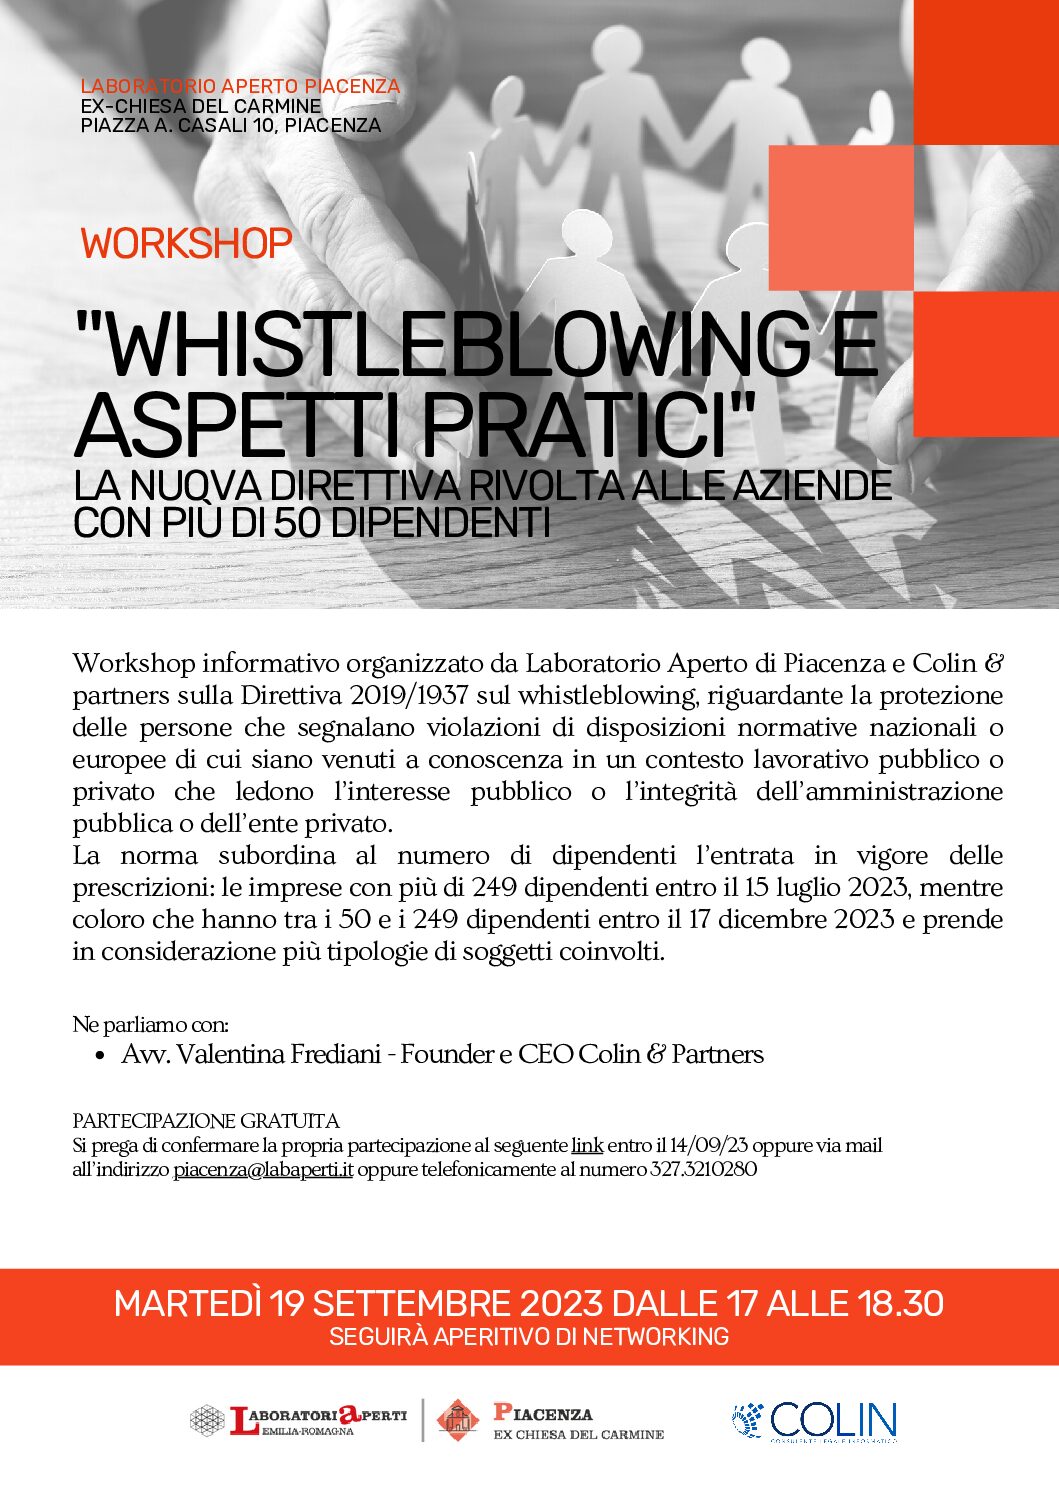 WORKSHOP “Whistleblowing e aspetti pratici” La nuova direttiva rivolta alle aziende con più di 50 dipendenti